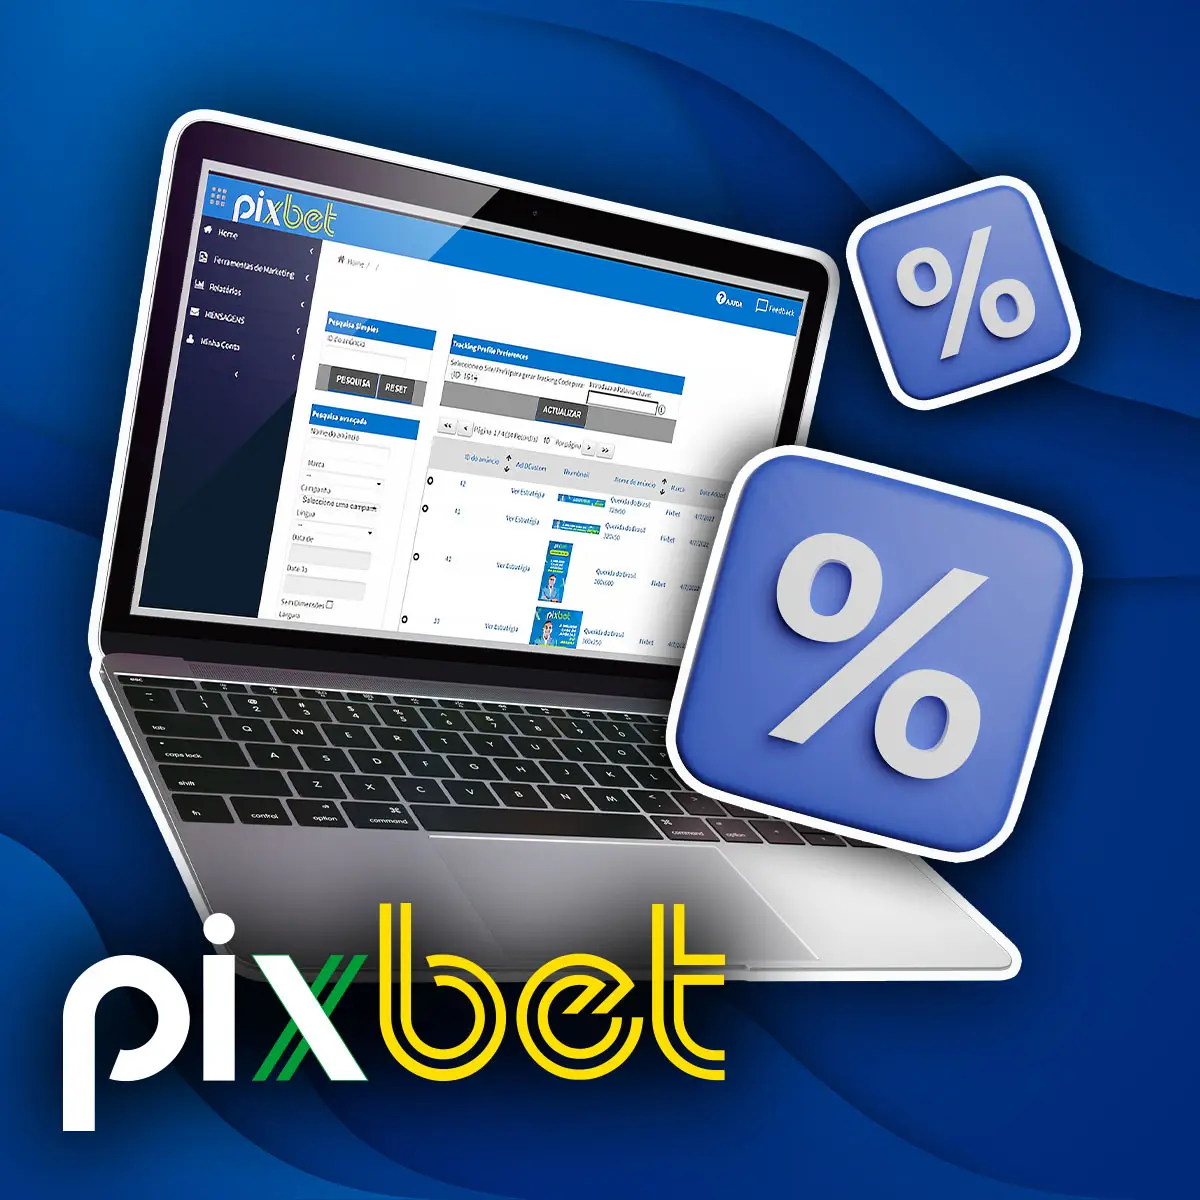 Como funciona o programa de afiliados na casa de apostas Pixbet no Brasil